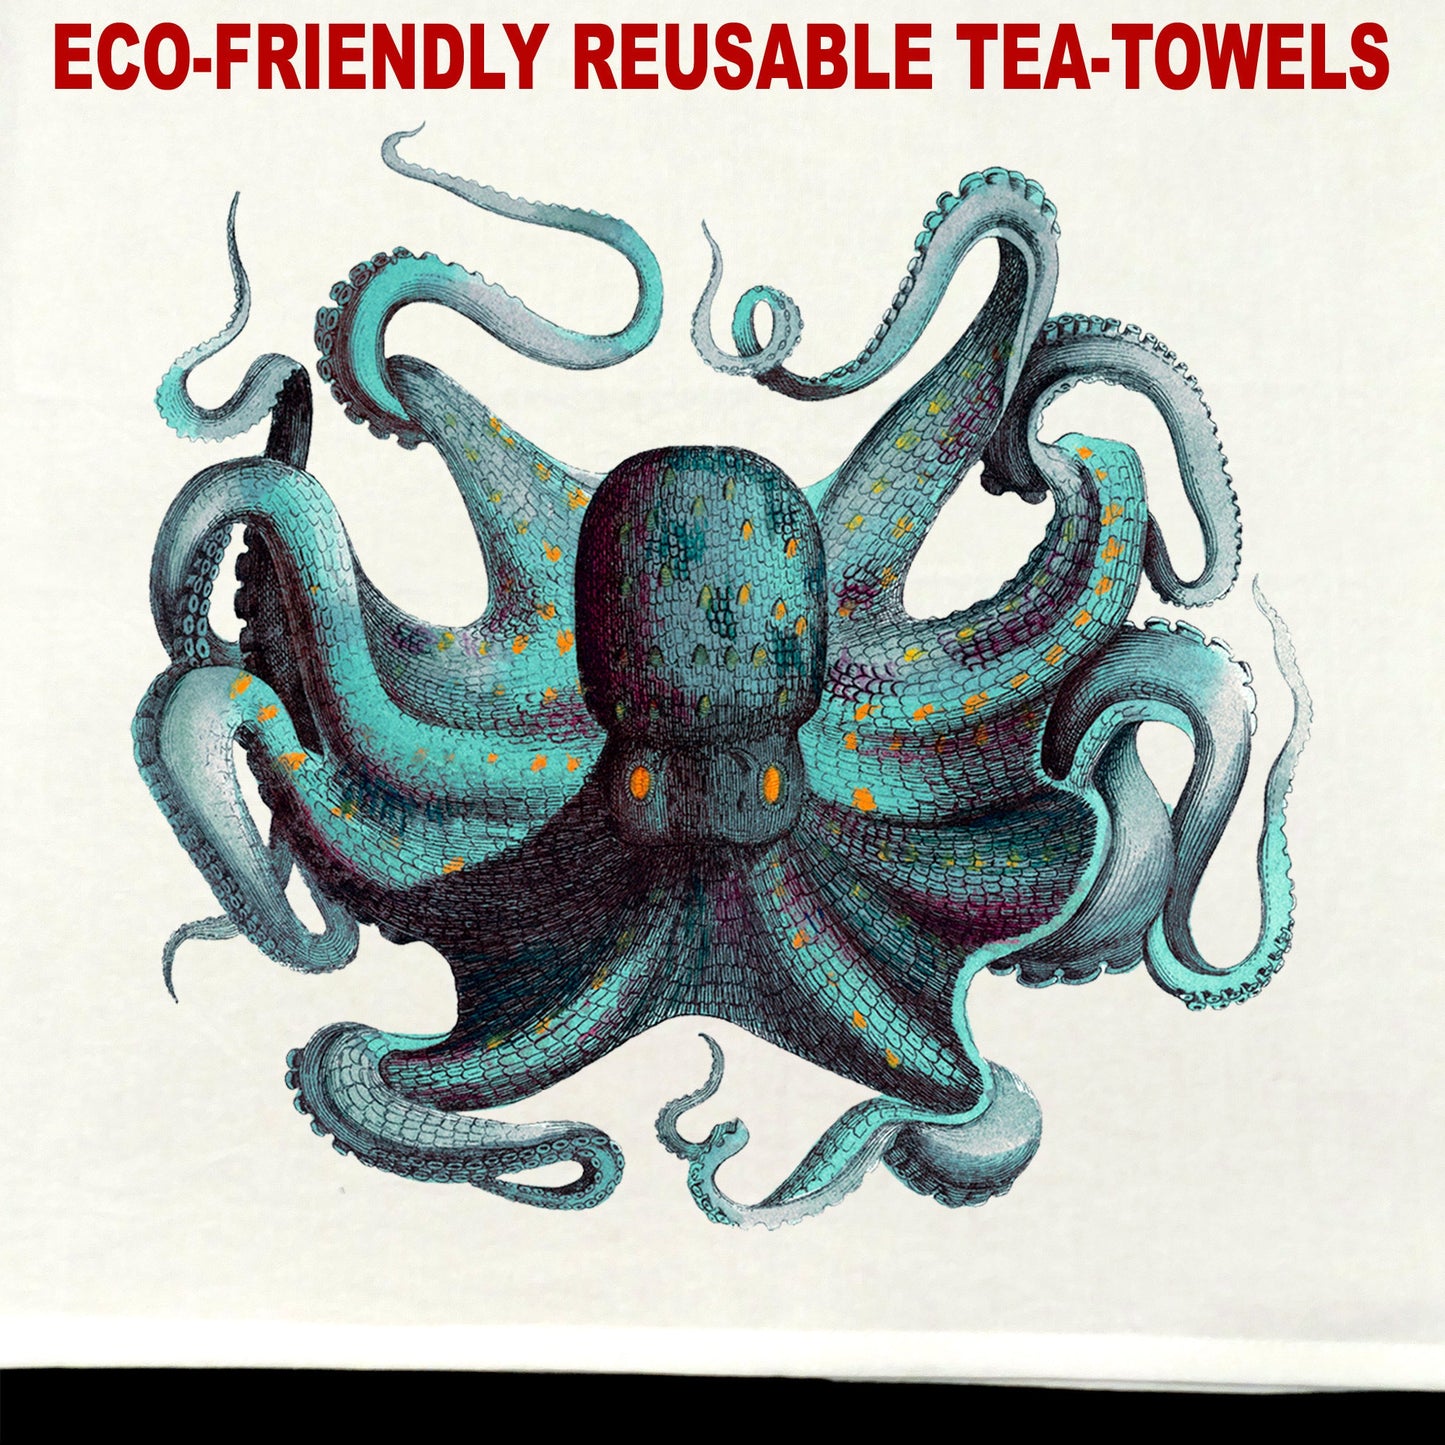 Octopus #1 Tea Towel / tea towel / dish towel / hand towel / reusable wipe / kitchen gift / kitchen deco